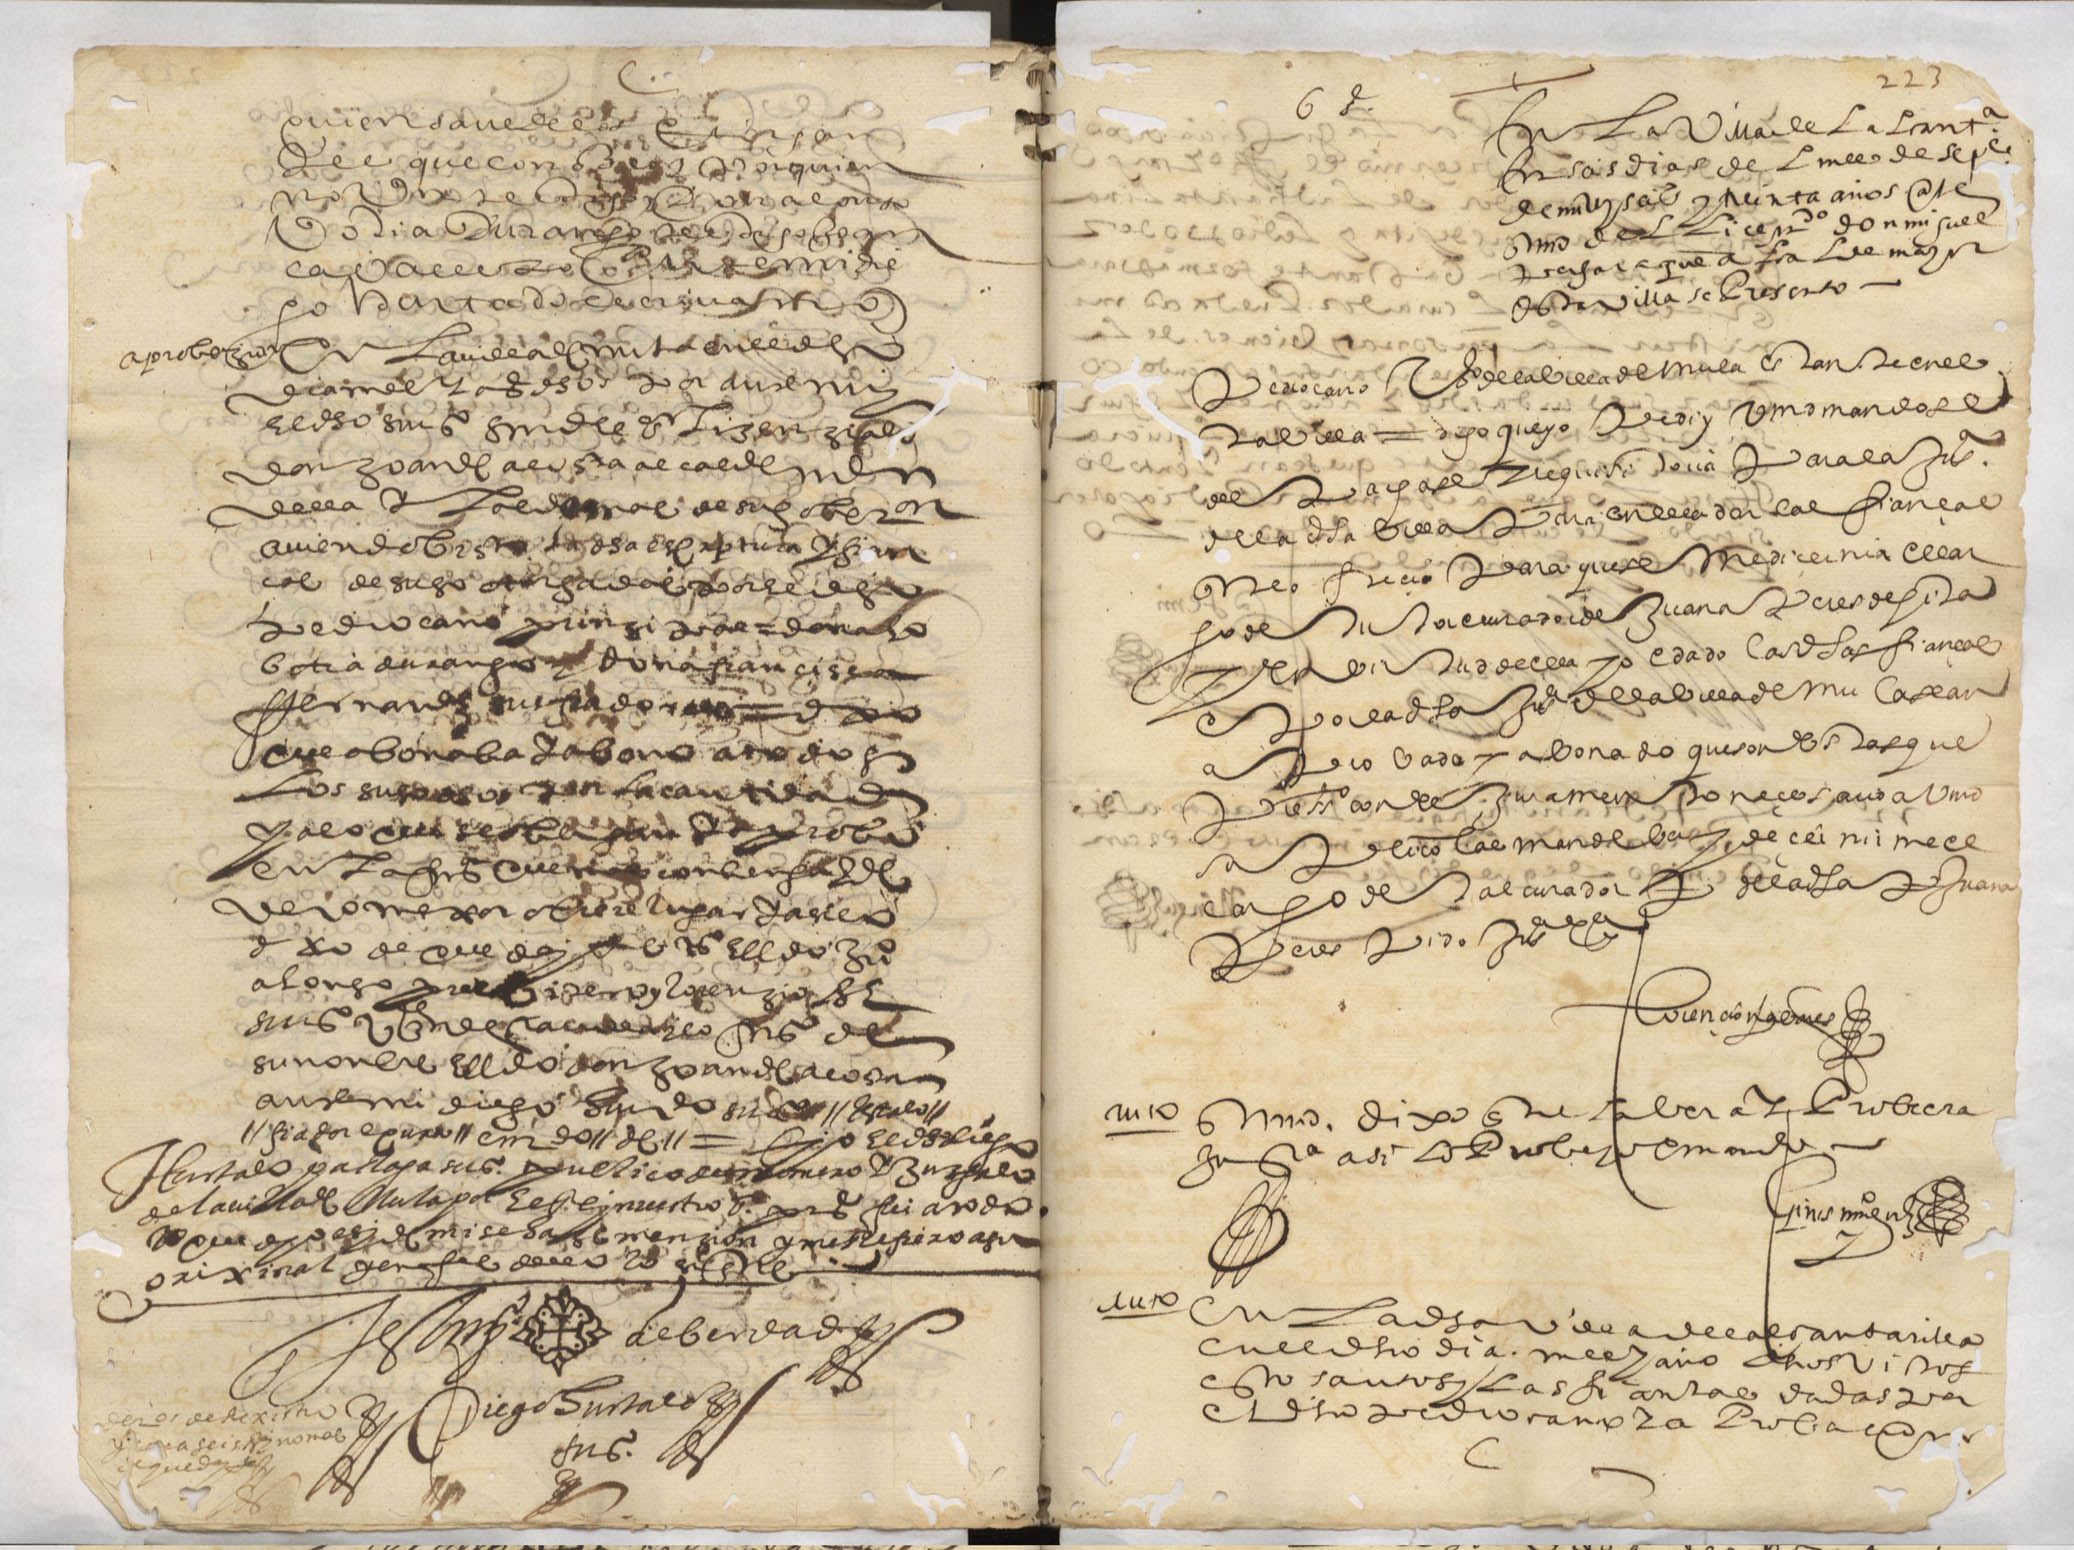 Registro de inventarios y particiones de bienes, Alcantarilla. Años 1627-1653.